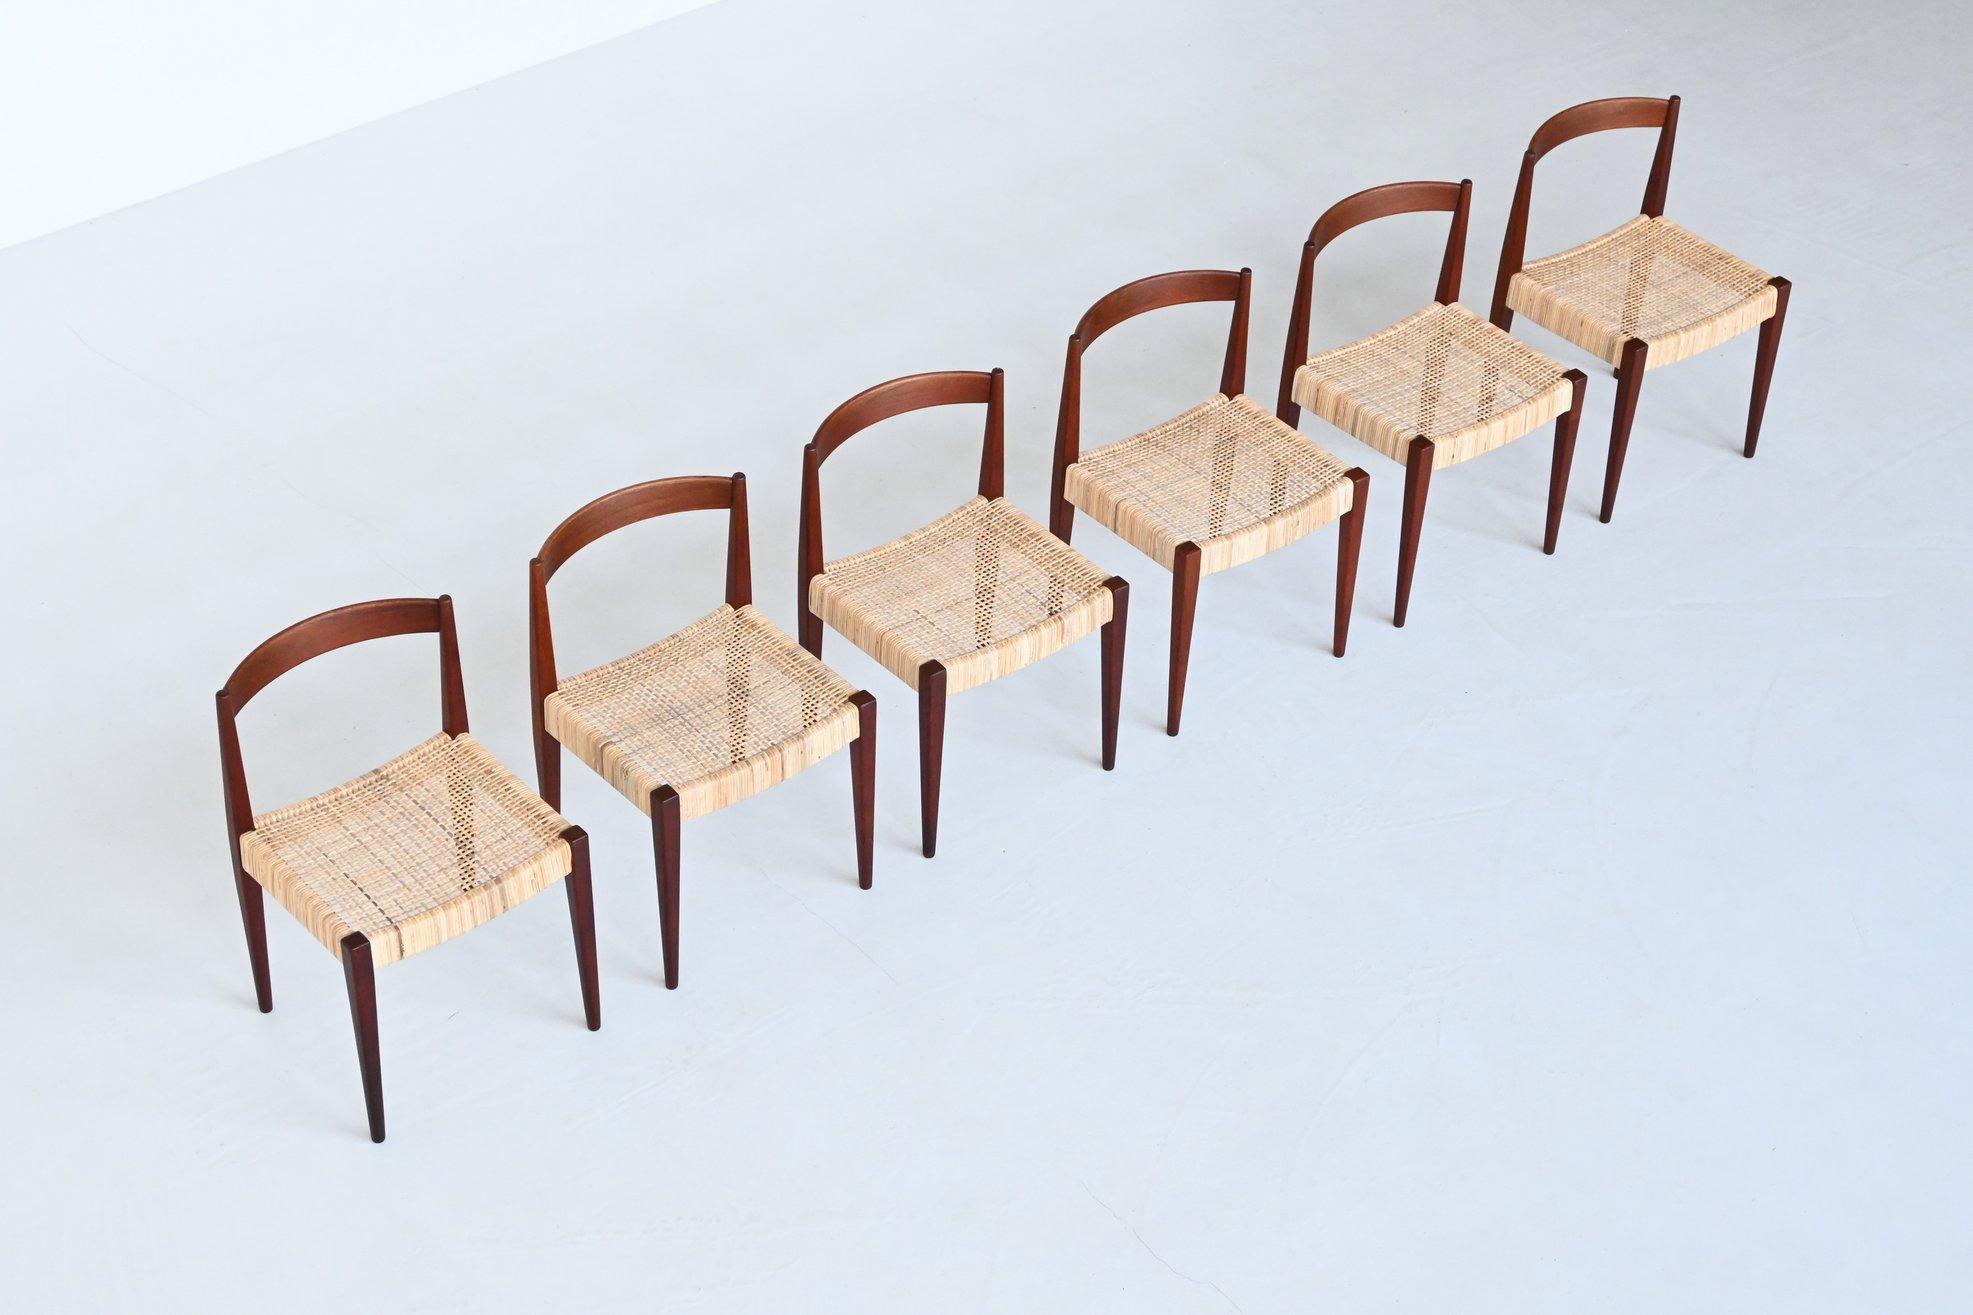 Magnifique ensemble de six chaises de salle à manger modèle 113 conçu par Nanna & Jørgen Ditzel pour Poul Kolds Savvaerk, Danemark 1955. Cette chaise de salle à manger a une structure en teck massif et une assise en rotin tressé. Ils ont une très